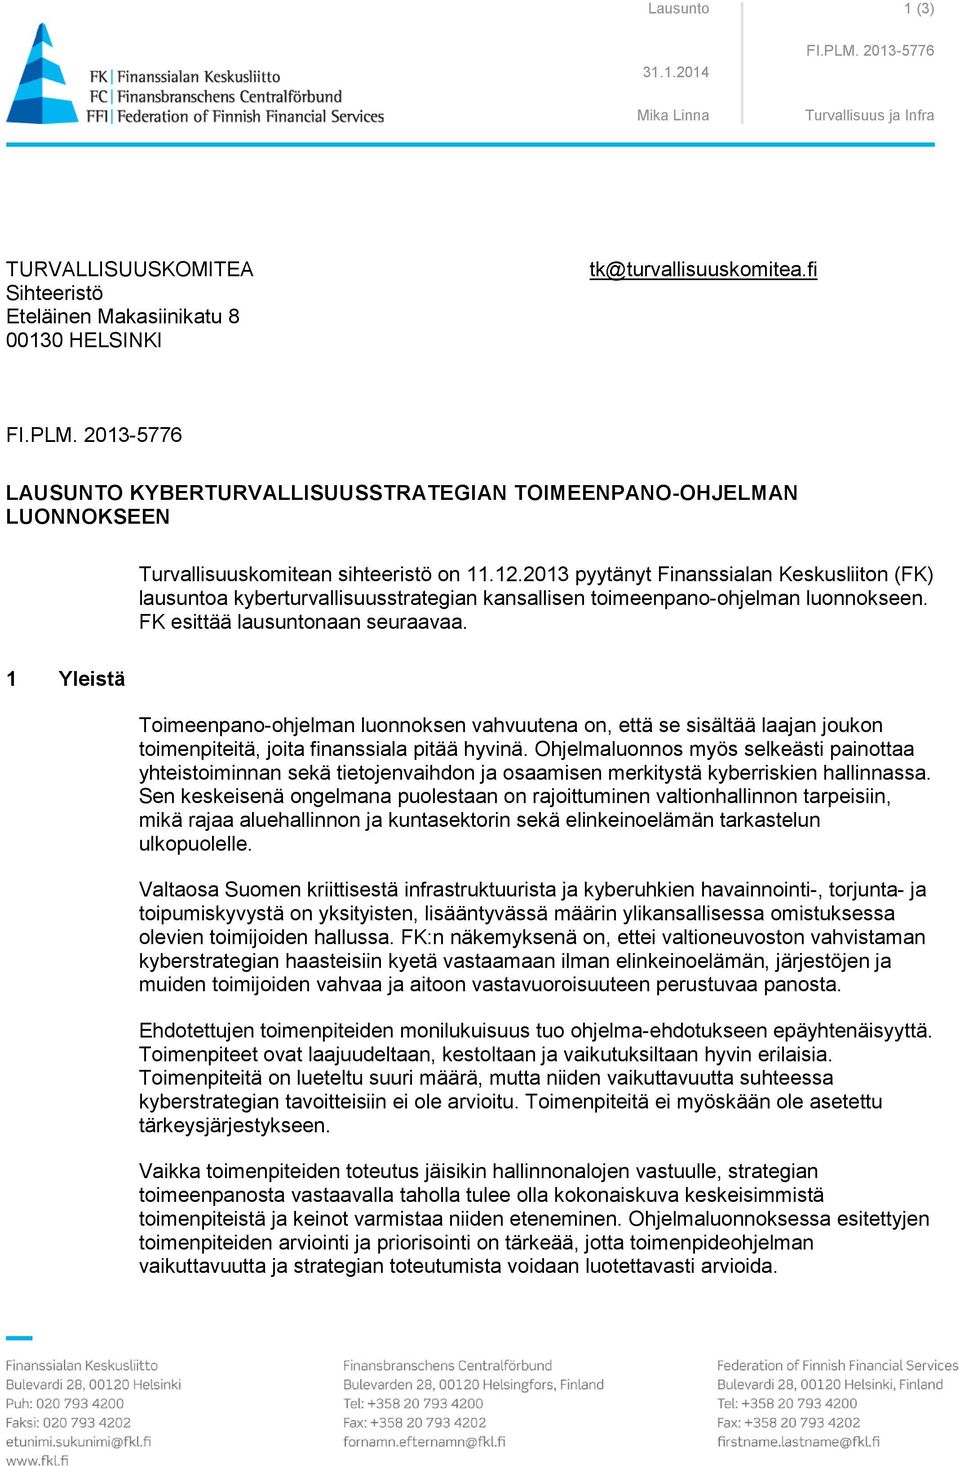 2013 pyytänyt Finanssialan Keskusliiton (FK) lausuntoa kyberturvallisuusstrategian kansallisen toimeenpano-ohjelman luonnokseen. FK esittää lausuntonaan seuraavaa.